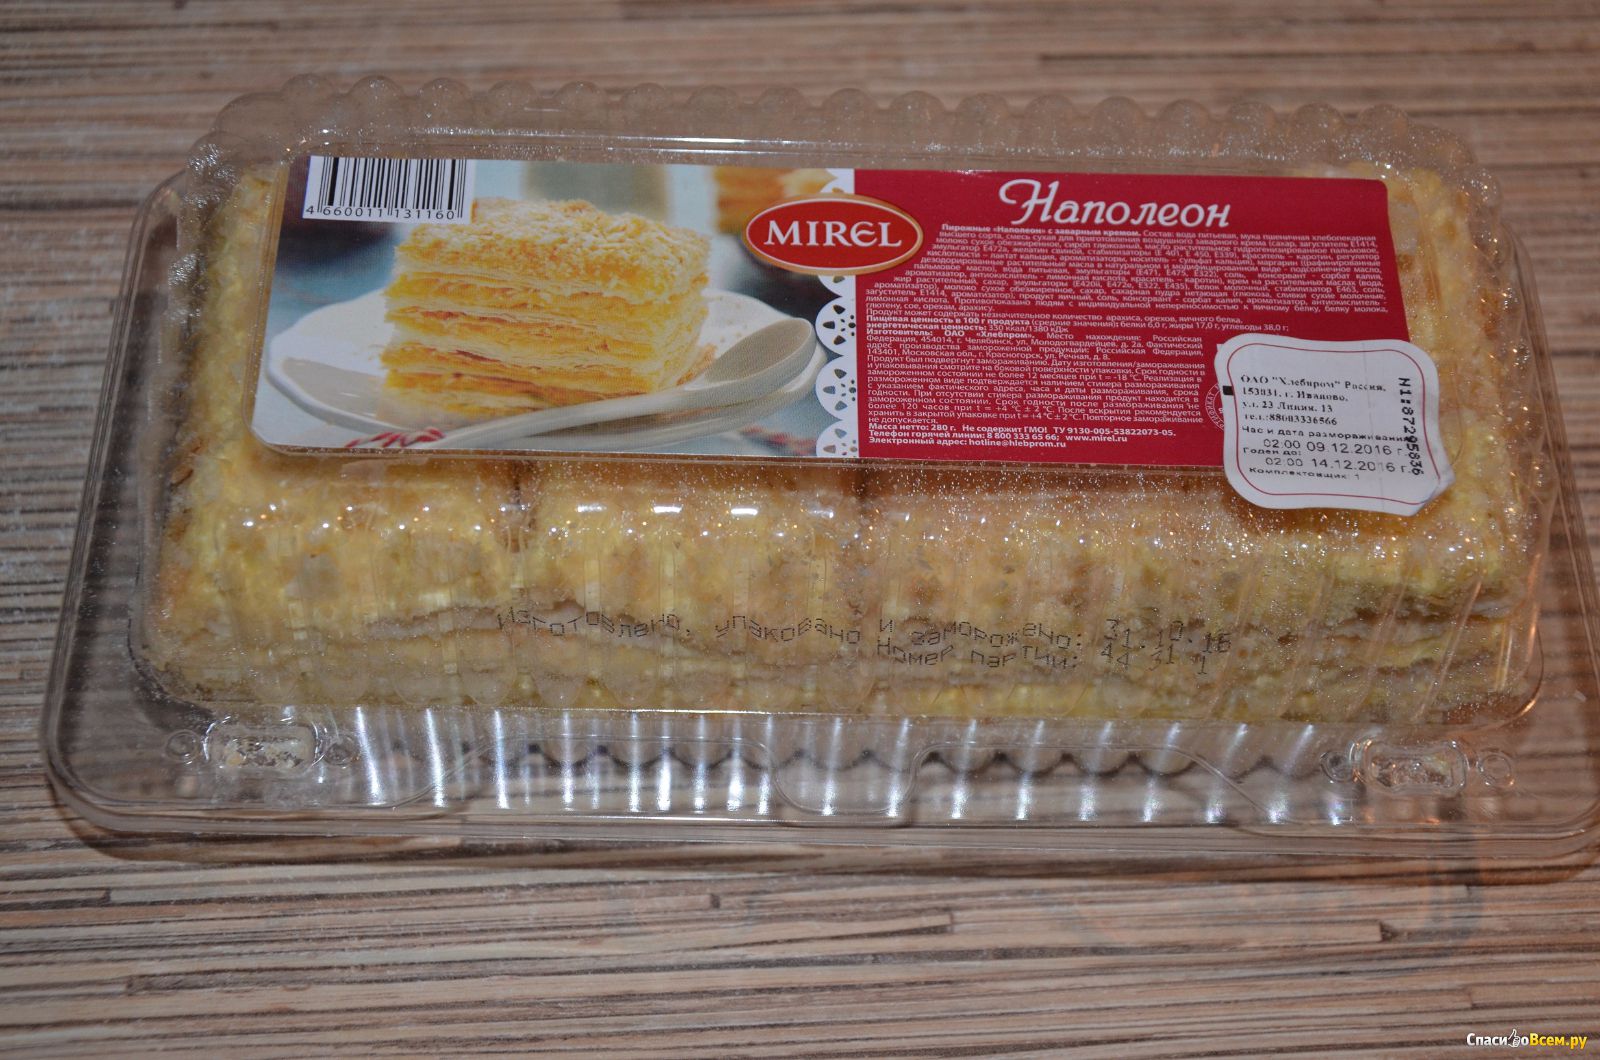 Наполеон калорийность на 100 грамм. Торт Мирель Наполеон Мирэль. Пирожное Наполеон Мирэль. Торт Наполеон Мирель вес. Торт магазинный.